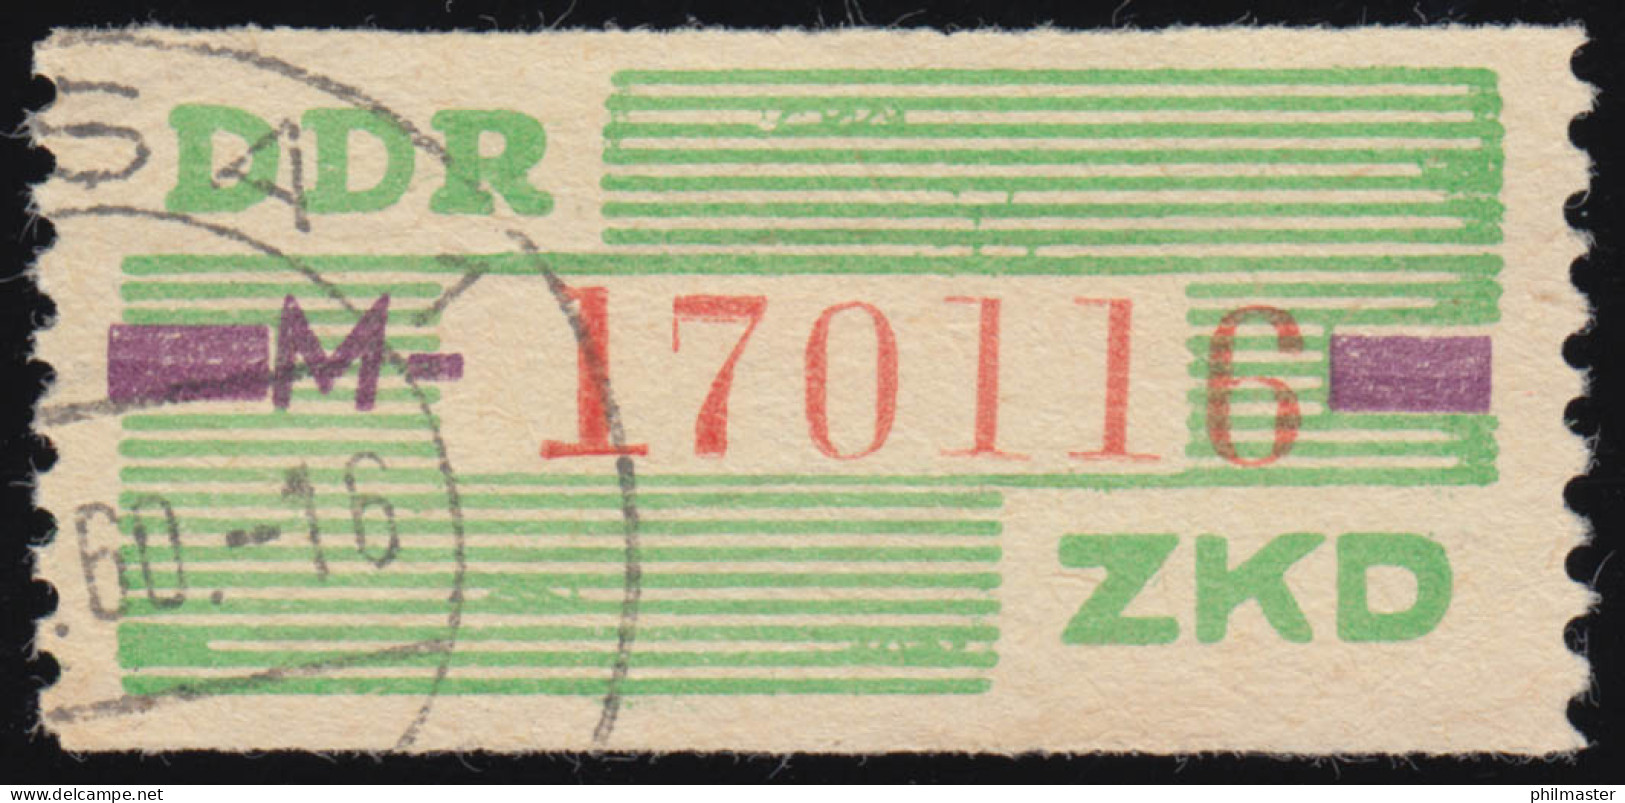 24-M Dienst-B, Billet Rot Auf Grün, Gestempelt - Gebraucht